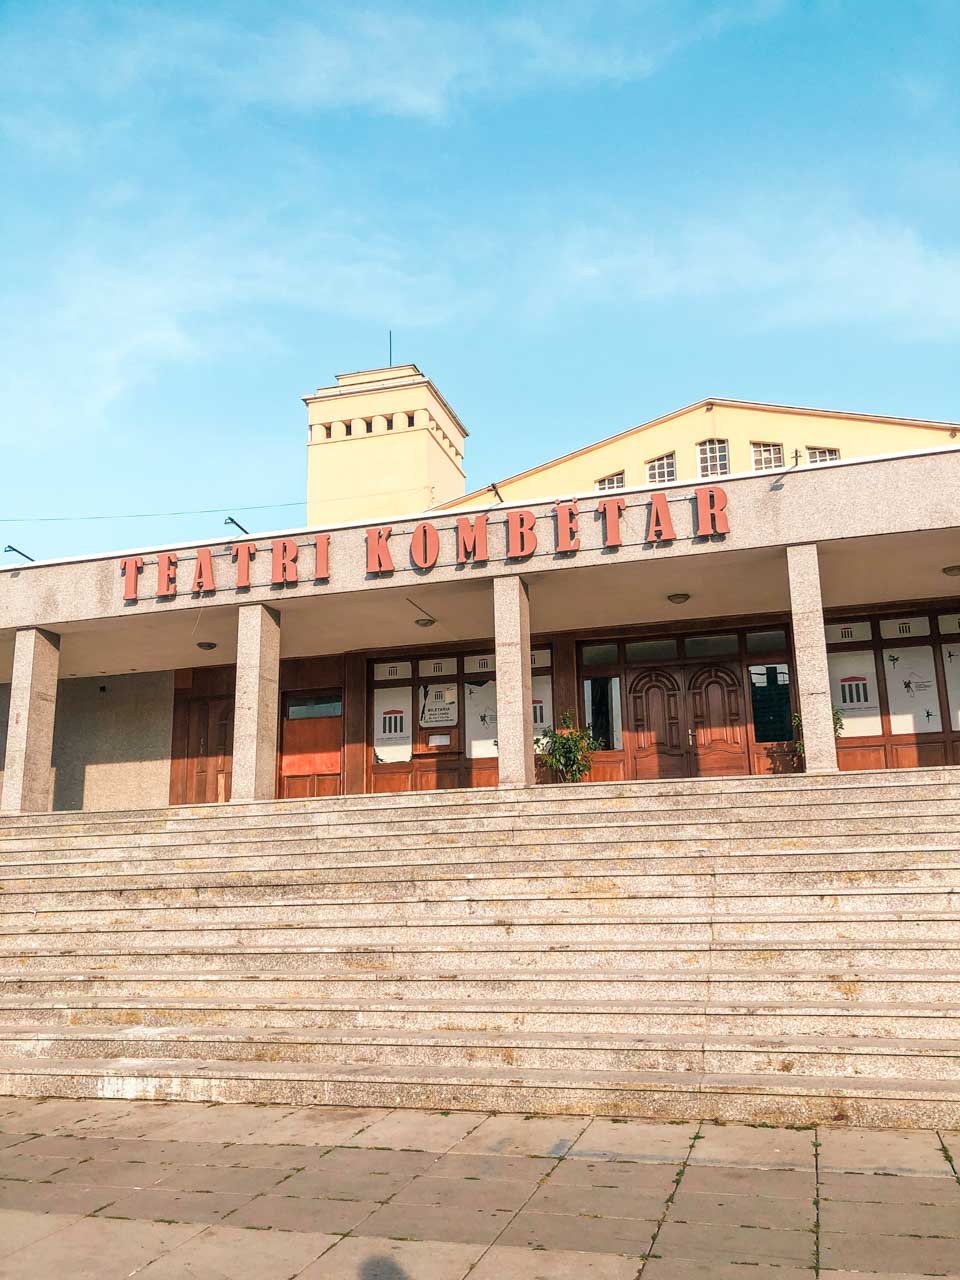 Teatri Kombëtar (National Theatre) in Pristina, Kosovo